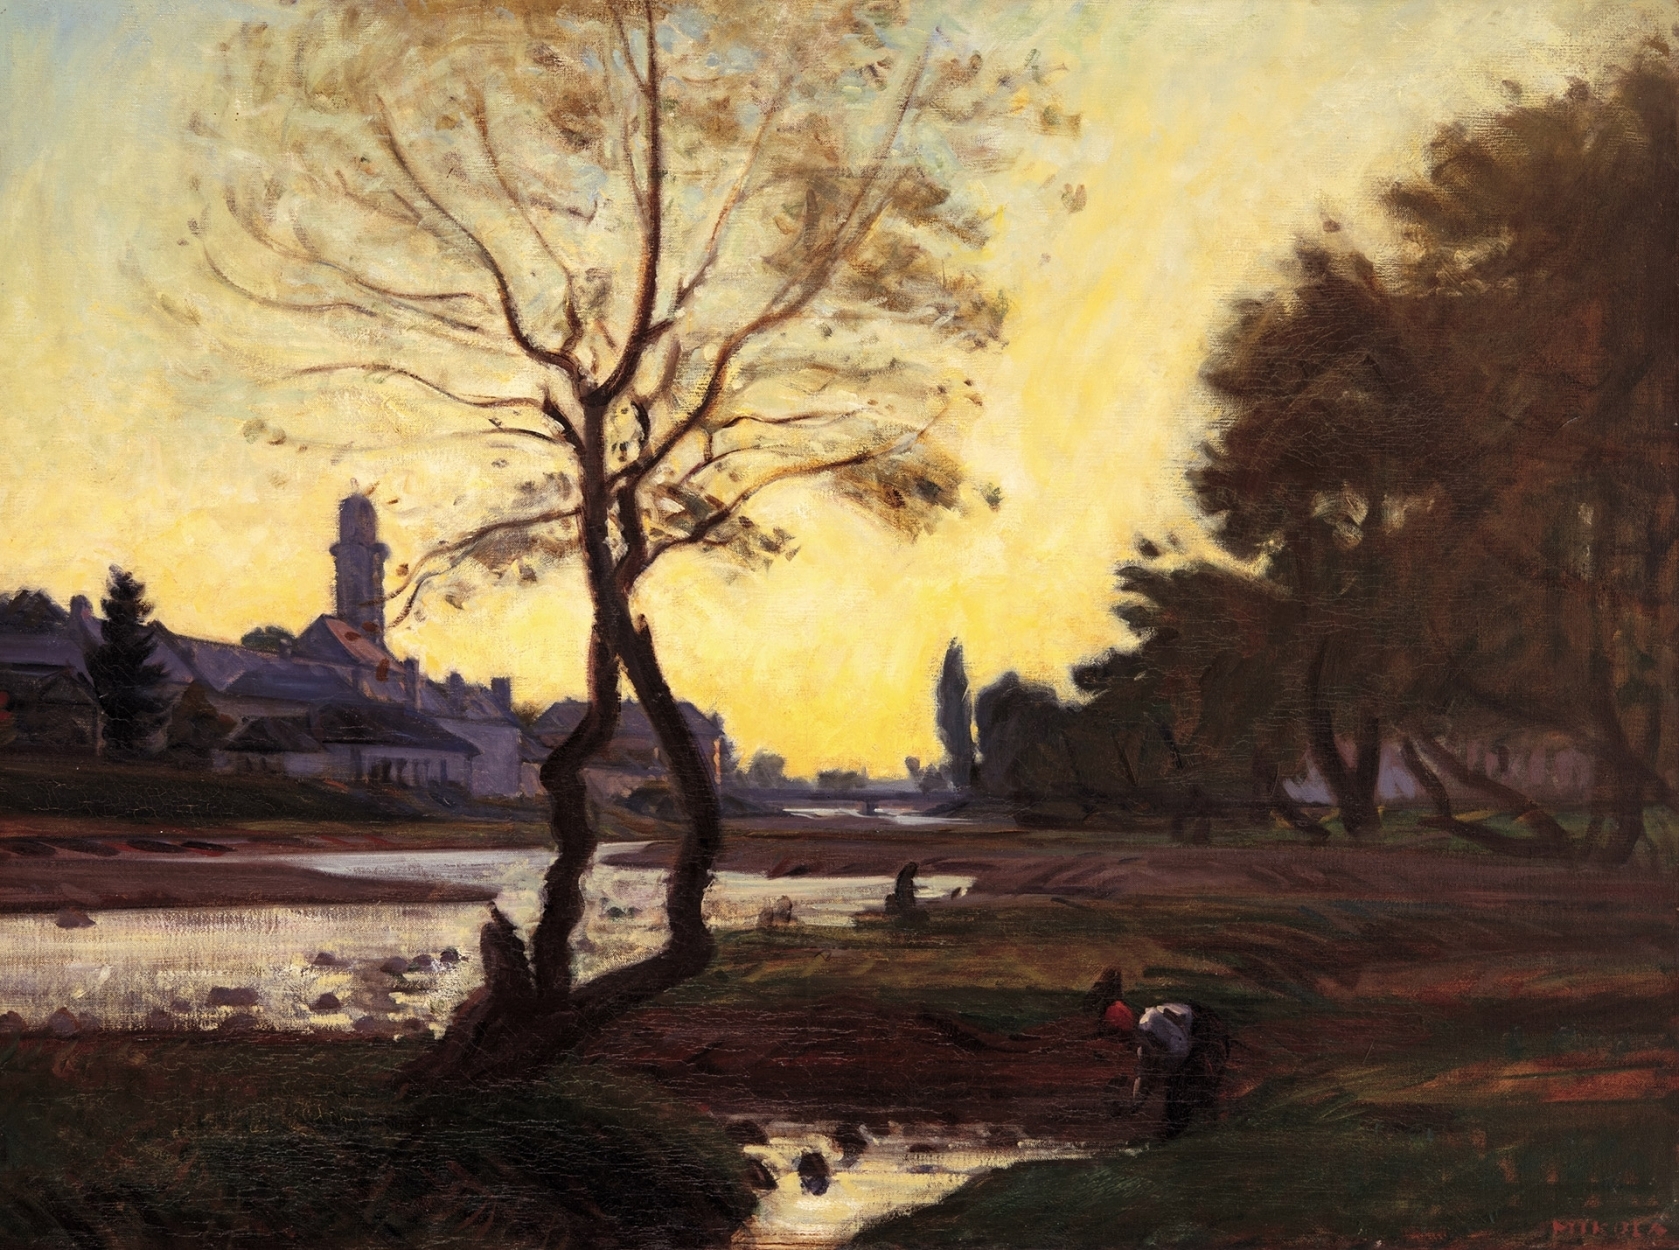 Mikola András (1884-1970) Sunset at Nagybánya (Baia Mare)